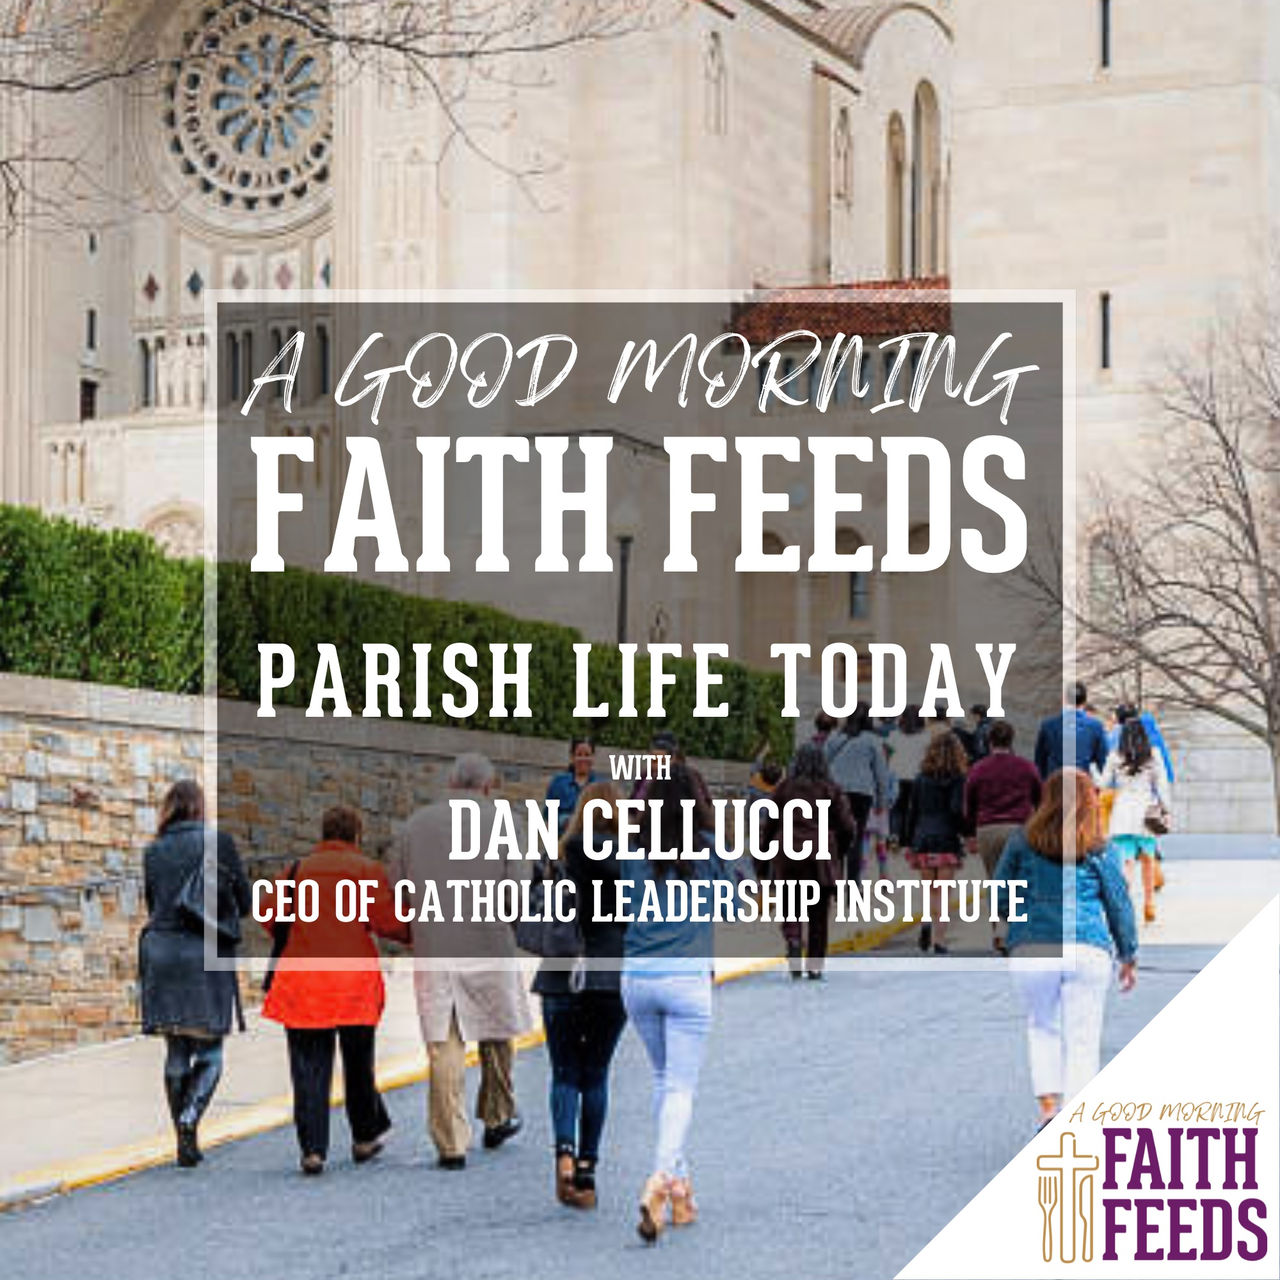 Summer Faith Feeds - Logos - C21 Faith Feeds Parish Life Today Dan Cellucci